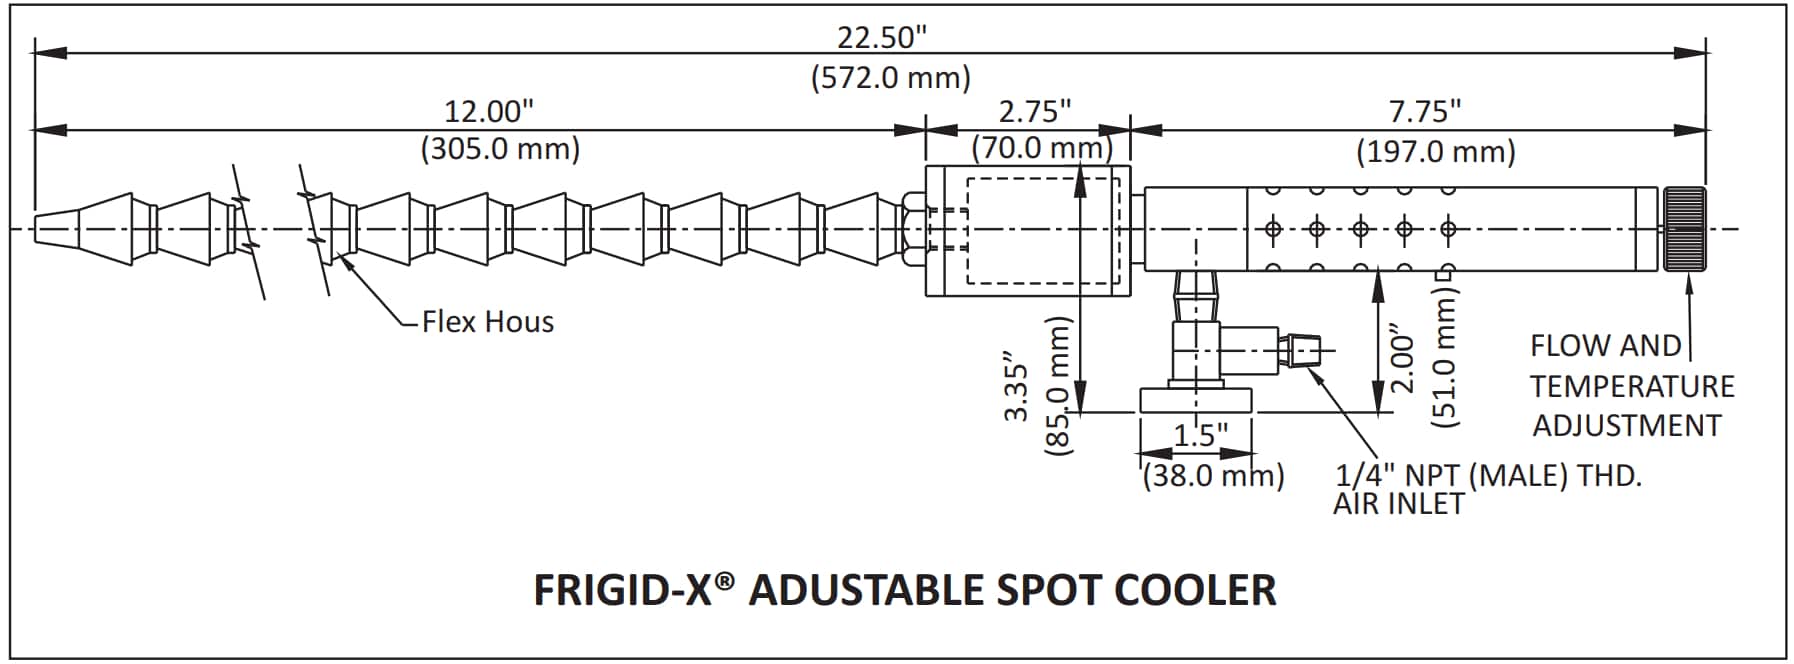 Dimension Adjustable Spot Cooler